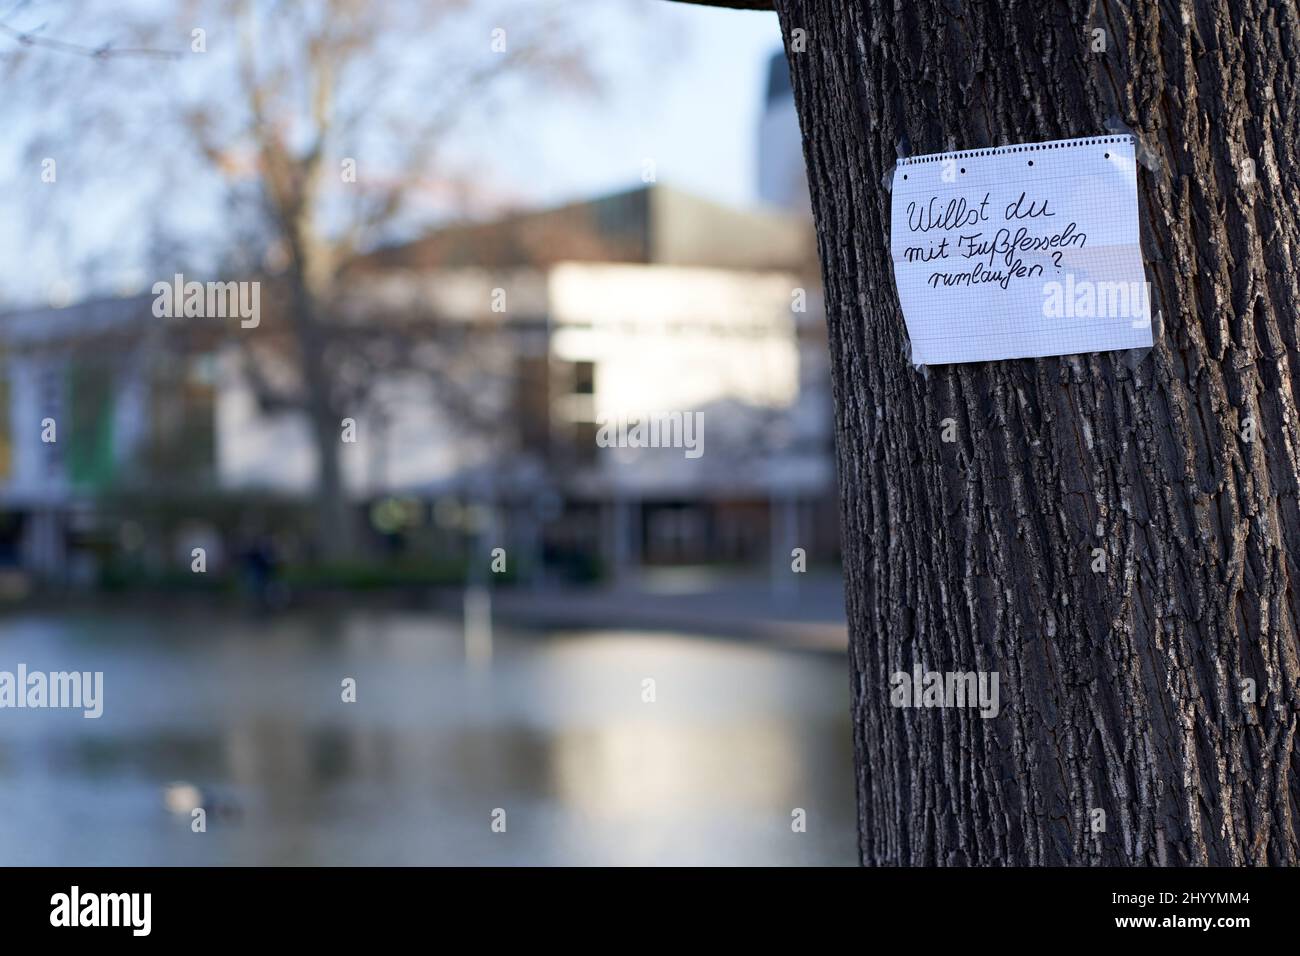 Nachricht von Corona-Gegnern. Weißes Blatt Papier mit schwarzen Buchstaben auf einem Baum in der Stadt. Stockfoto